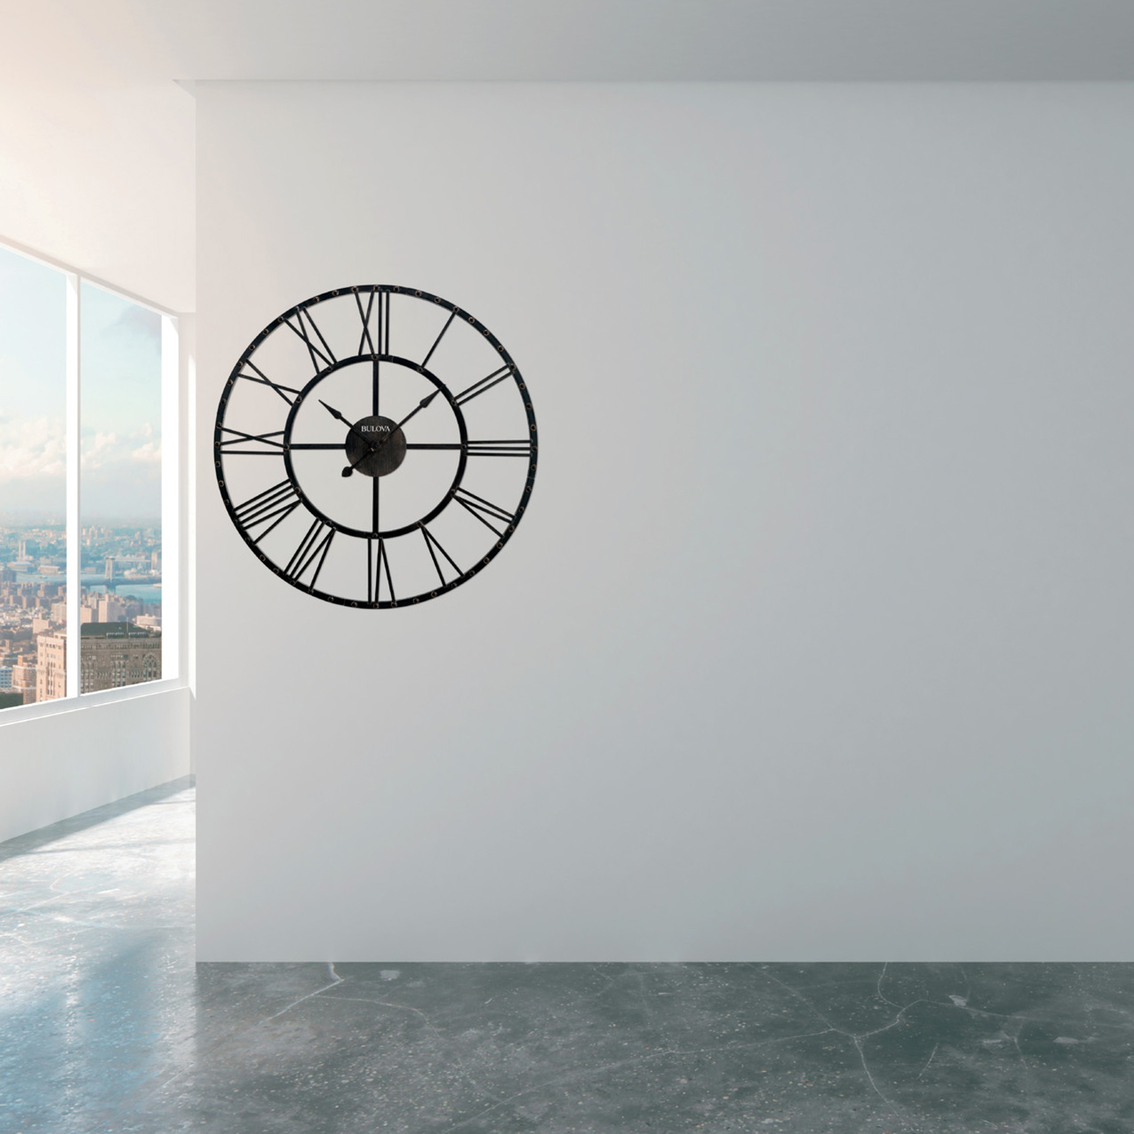 Bulova Carmen Wall Clock C4820 - Image 2 of 2